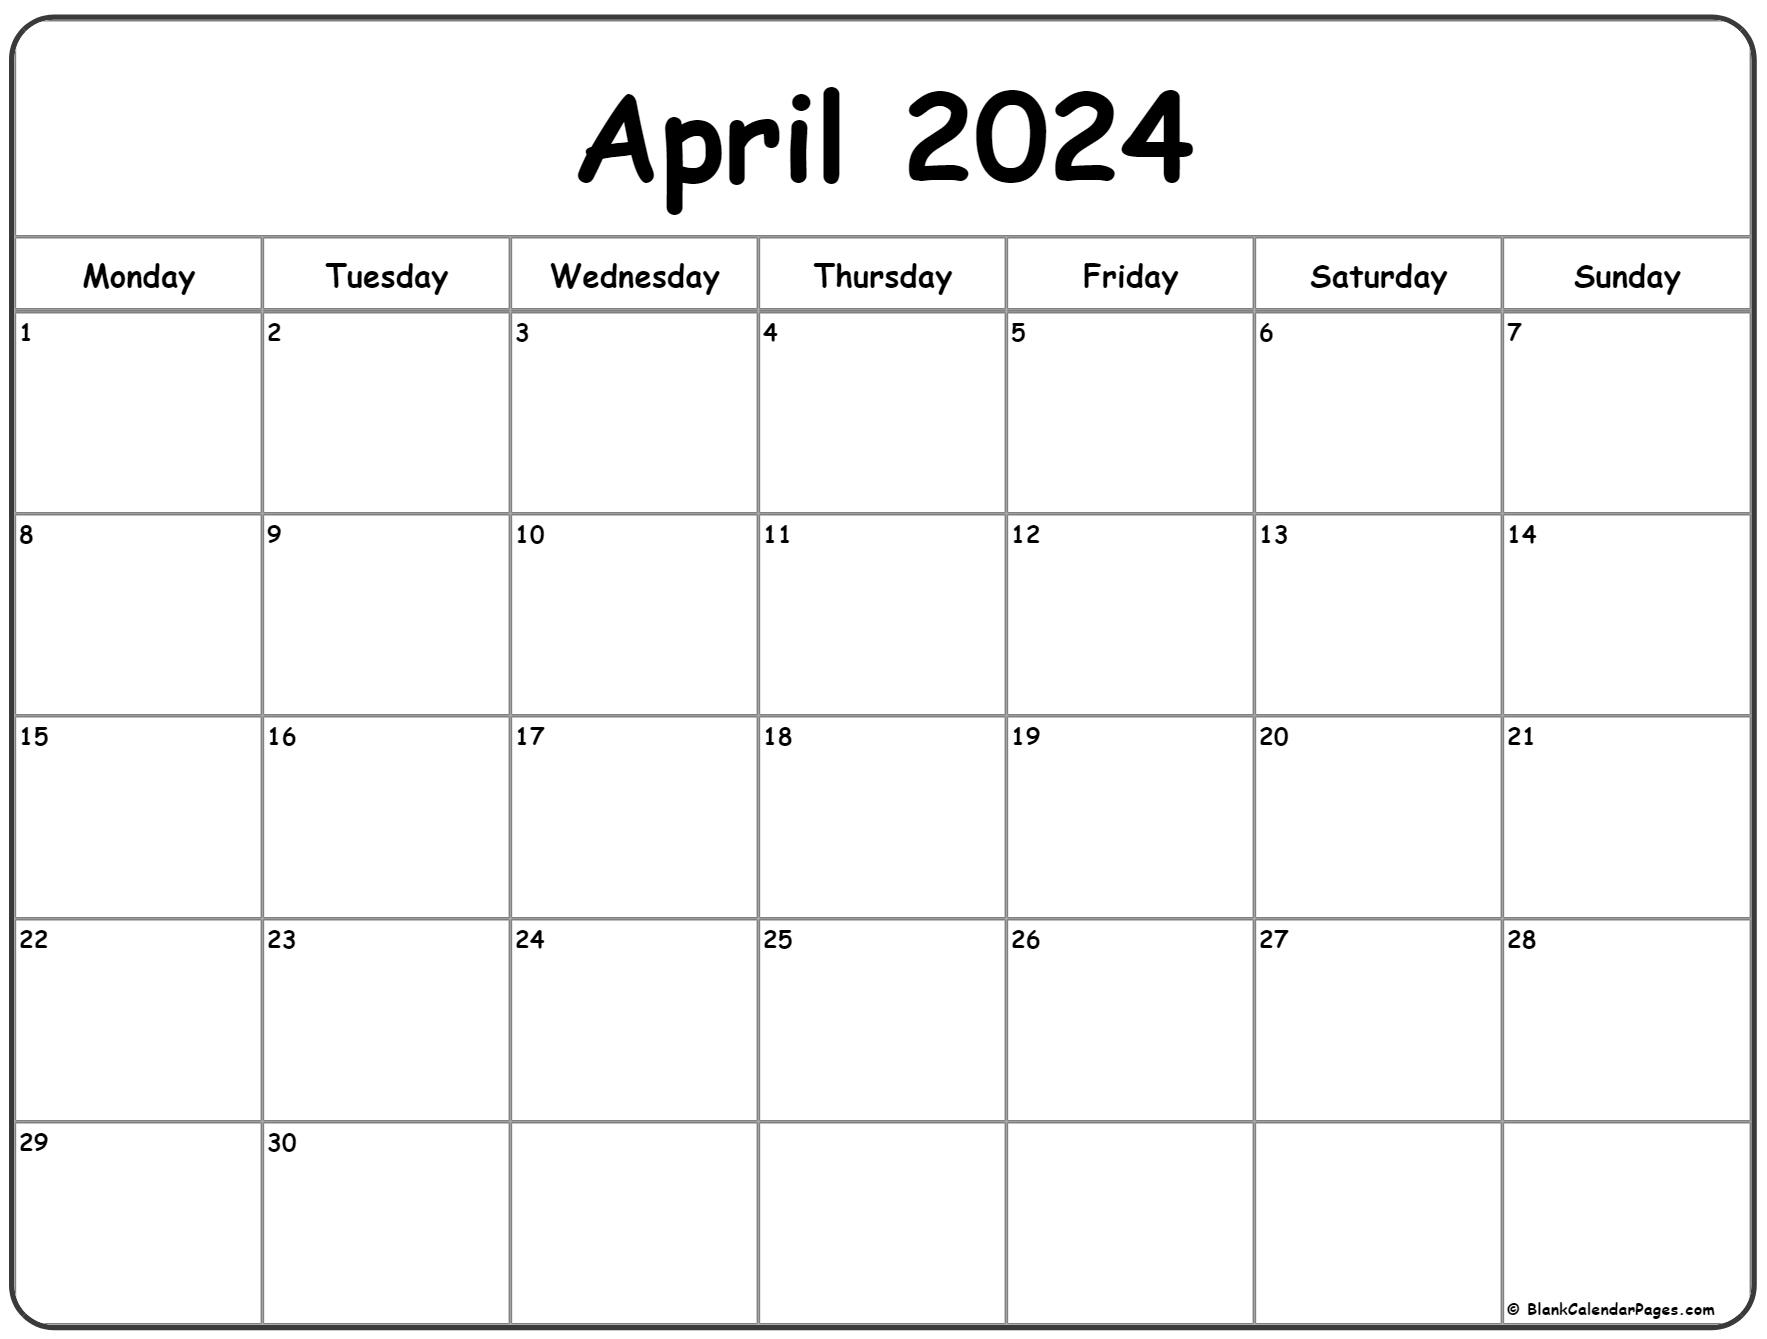 April 2024 Monday Calendar | Monday To Sunday for Printable April 2024 Calendar